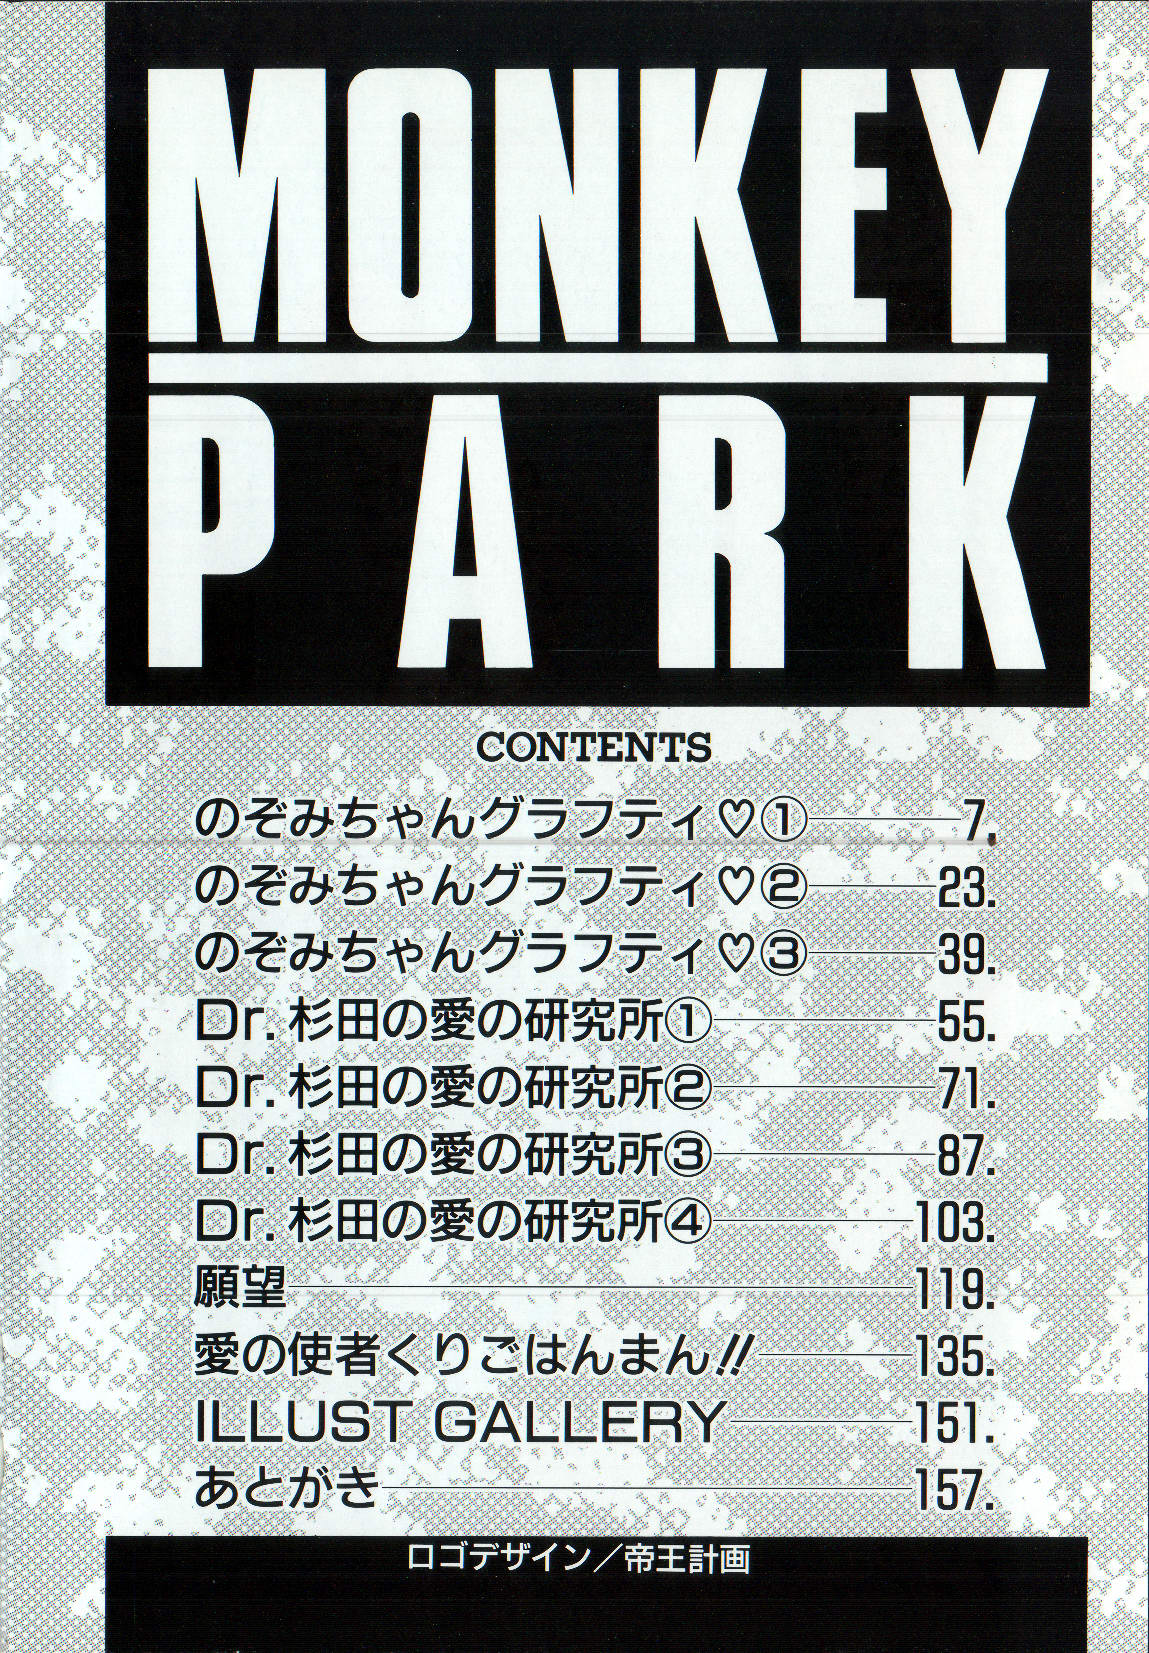 [Monkey Ni-gou] MONKEY PARK [悶鬼威弐号] MONKEY PARK